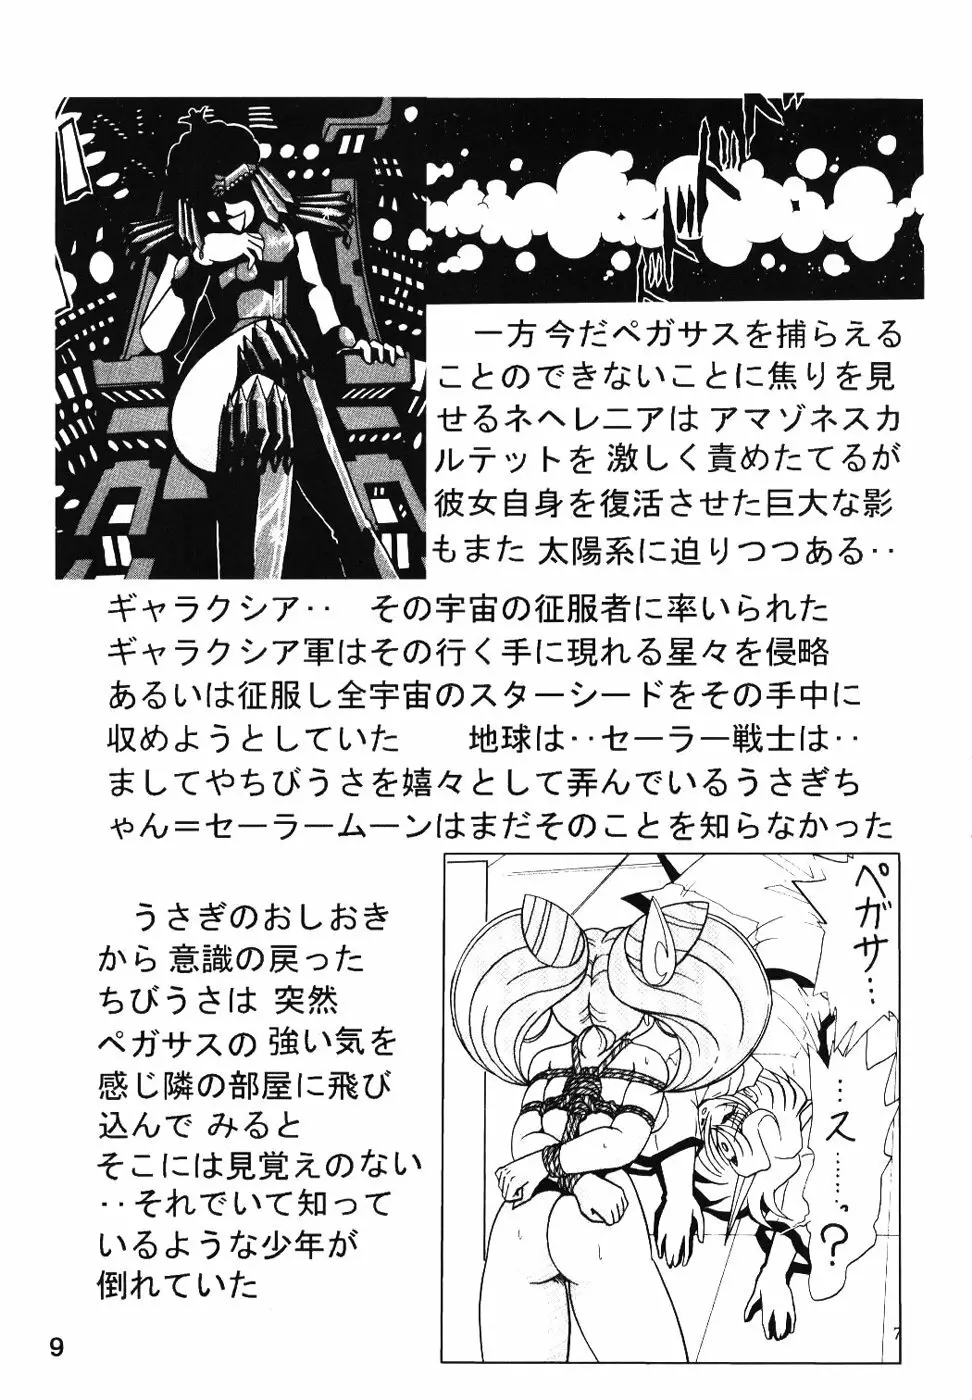 サイレント・サターン SS vol.7 9ページ